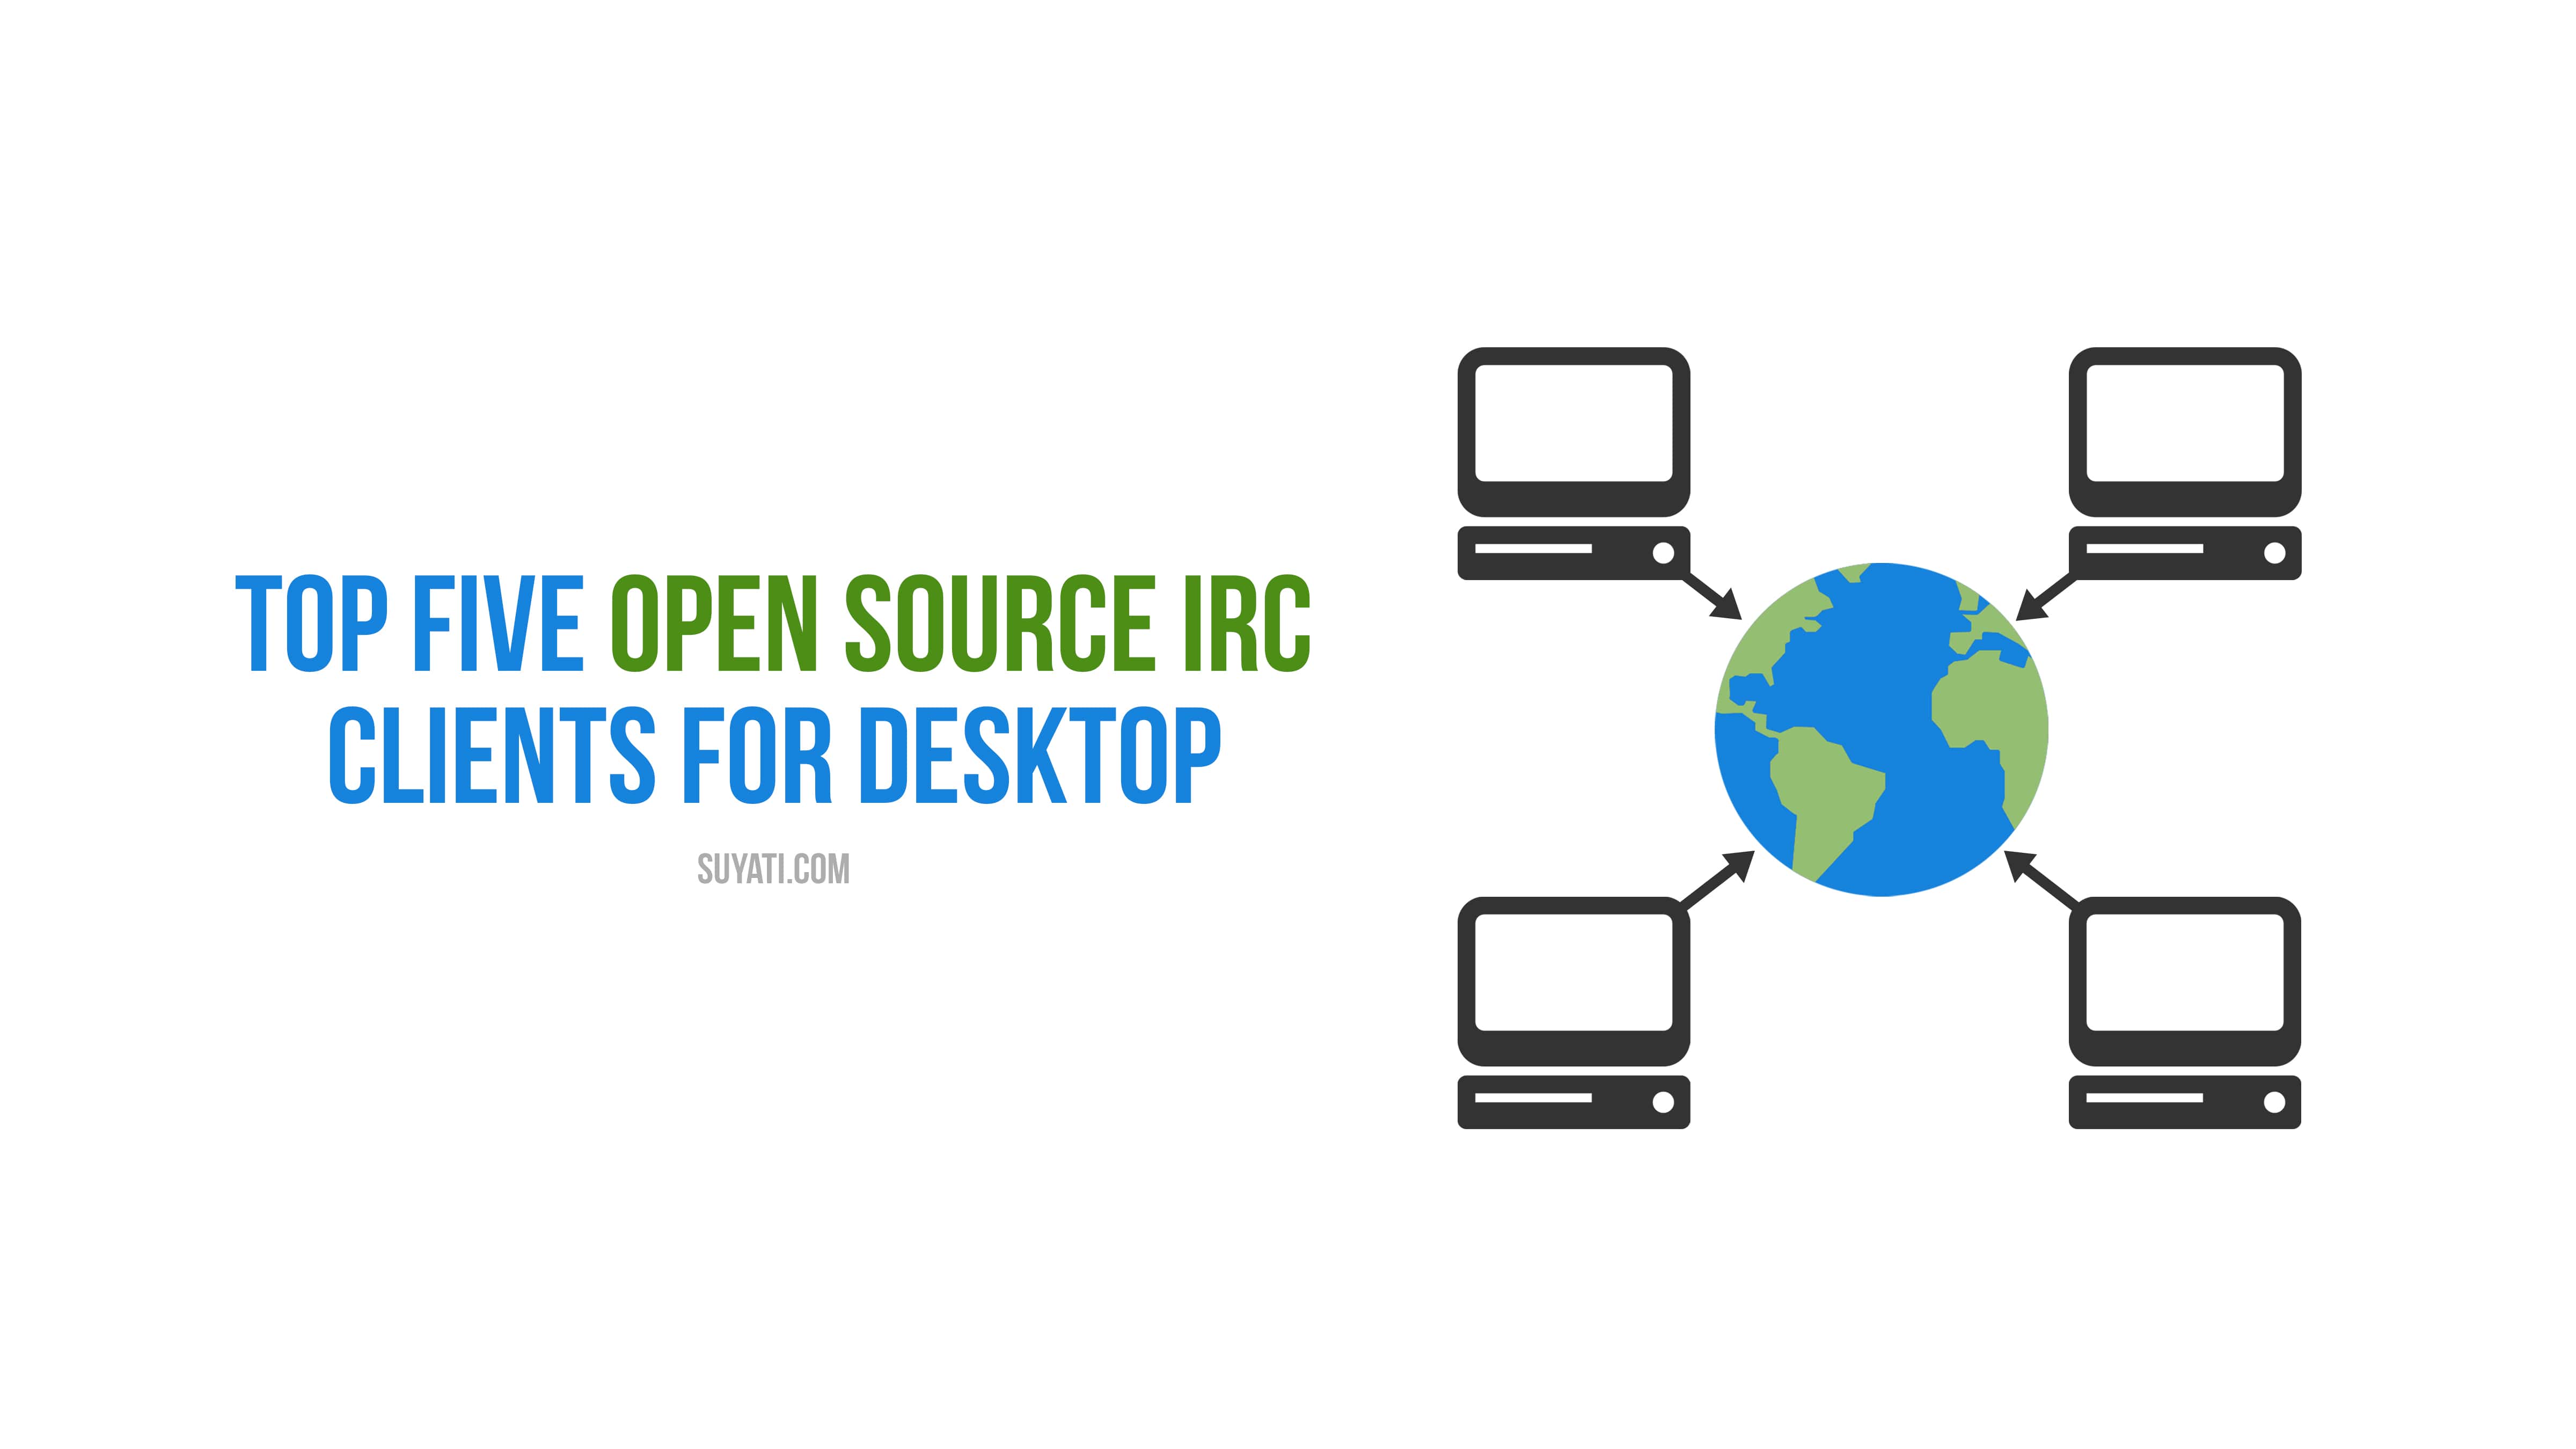 open source irc